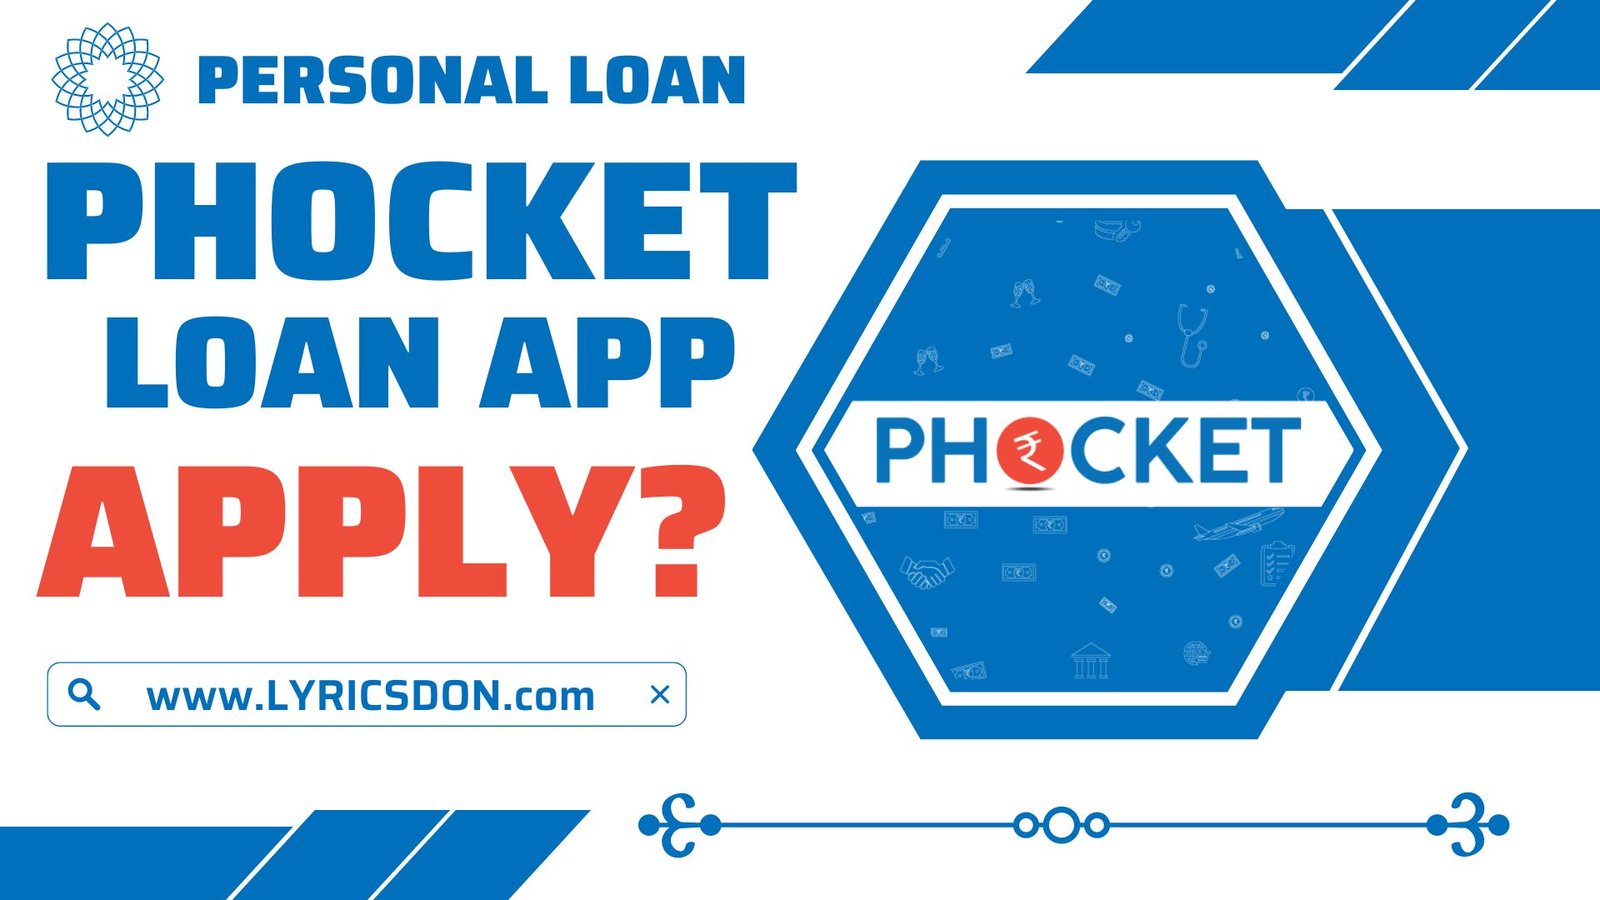 Phocket Loan App से लोन कैसे लें?